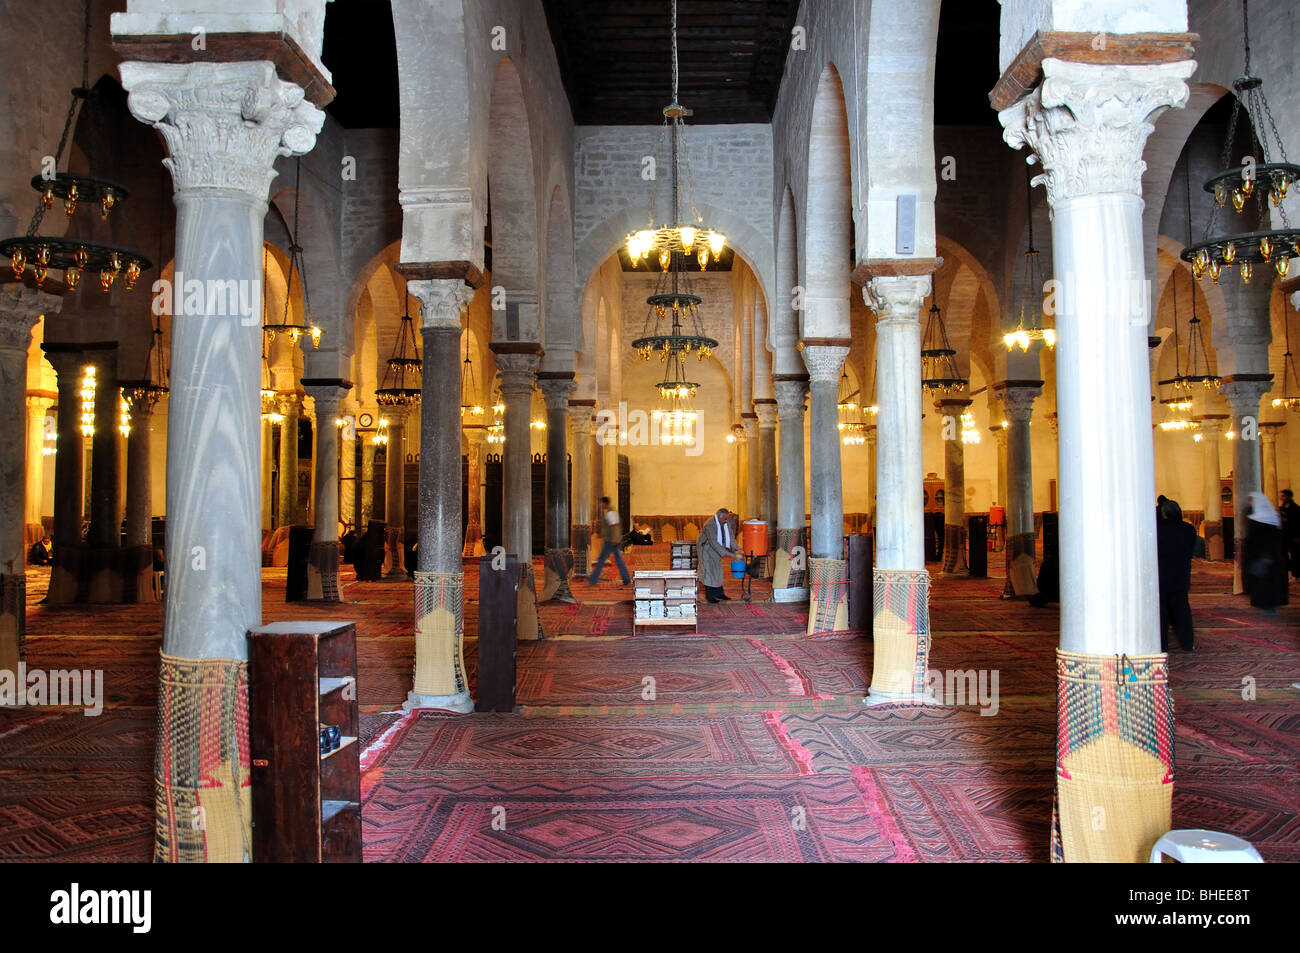 L'intérieur de la mosquée, la Grande Mosquée, le Souk de Kairouan, Kairouan, Kairouan gouvernorat, Tunisie Banque D'Images